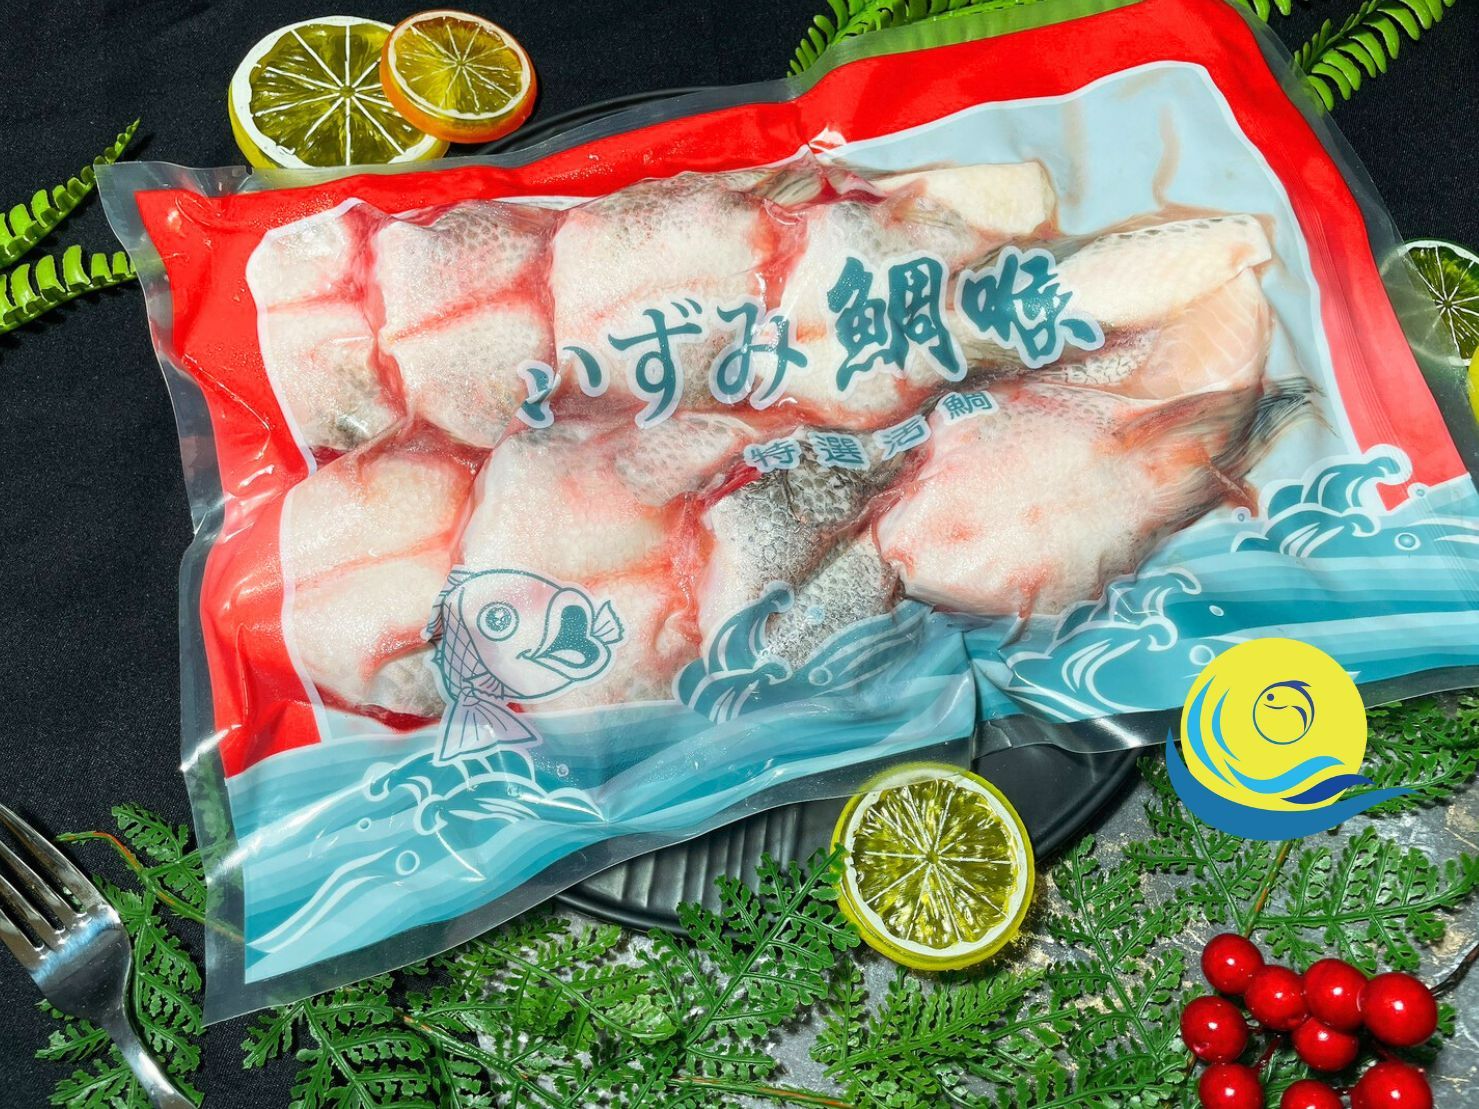 【汰鑫鮮】7-8塊 魚下巴 鯛魚下巴/燒烤 烤物 日式料理 熱炒美食